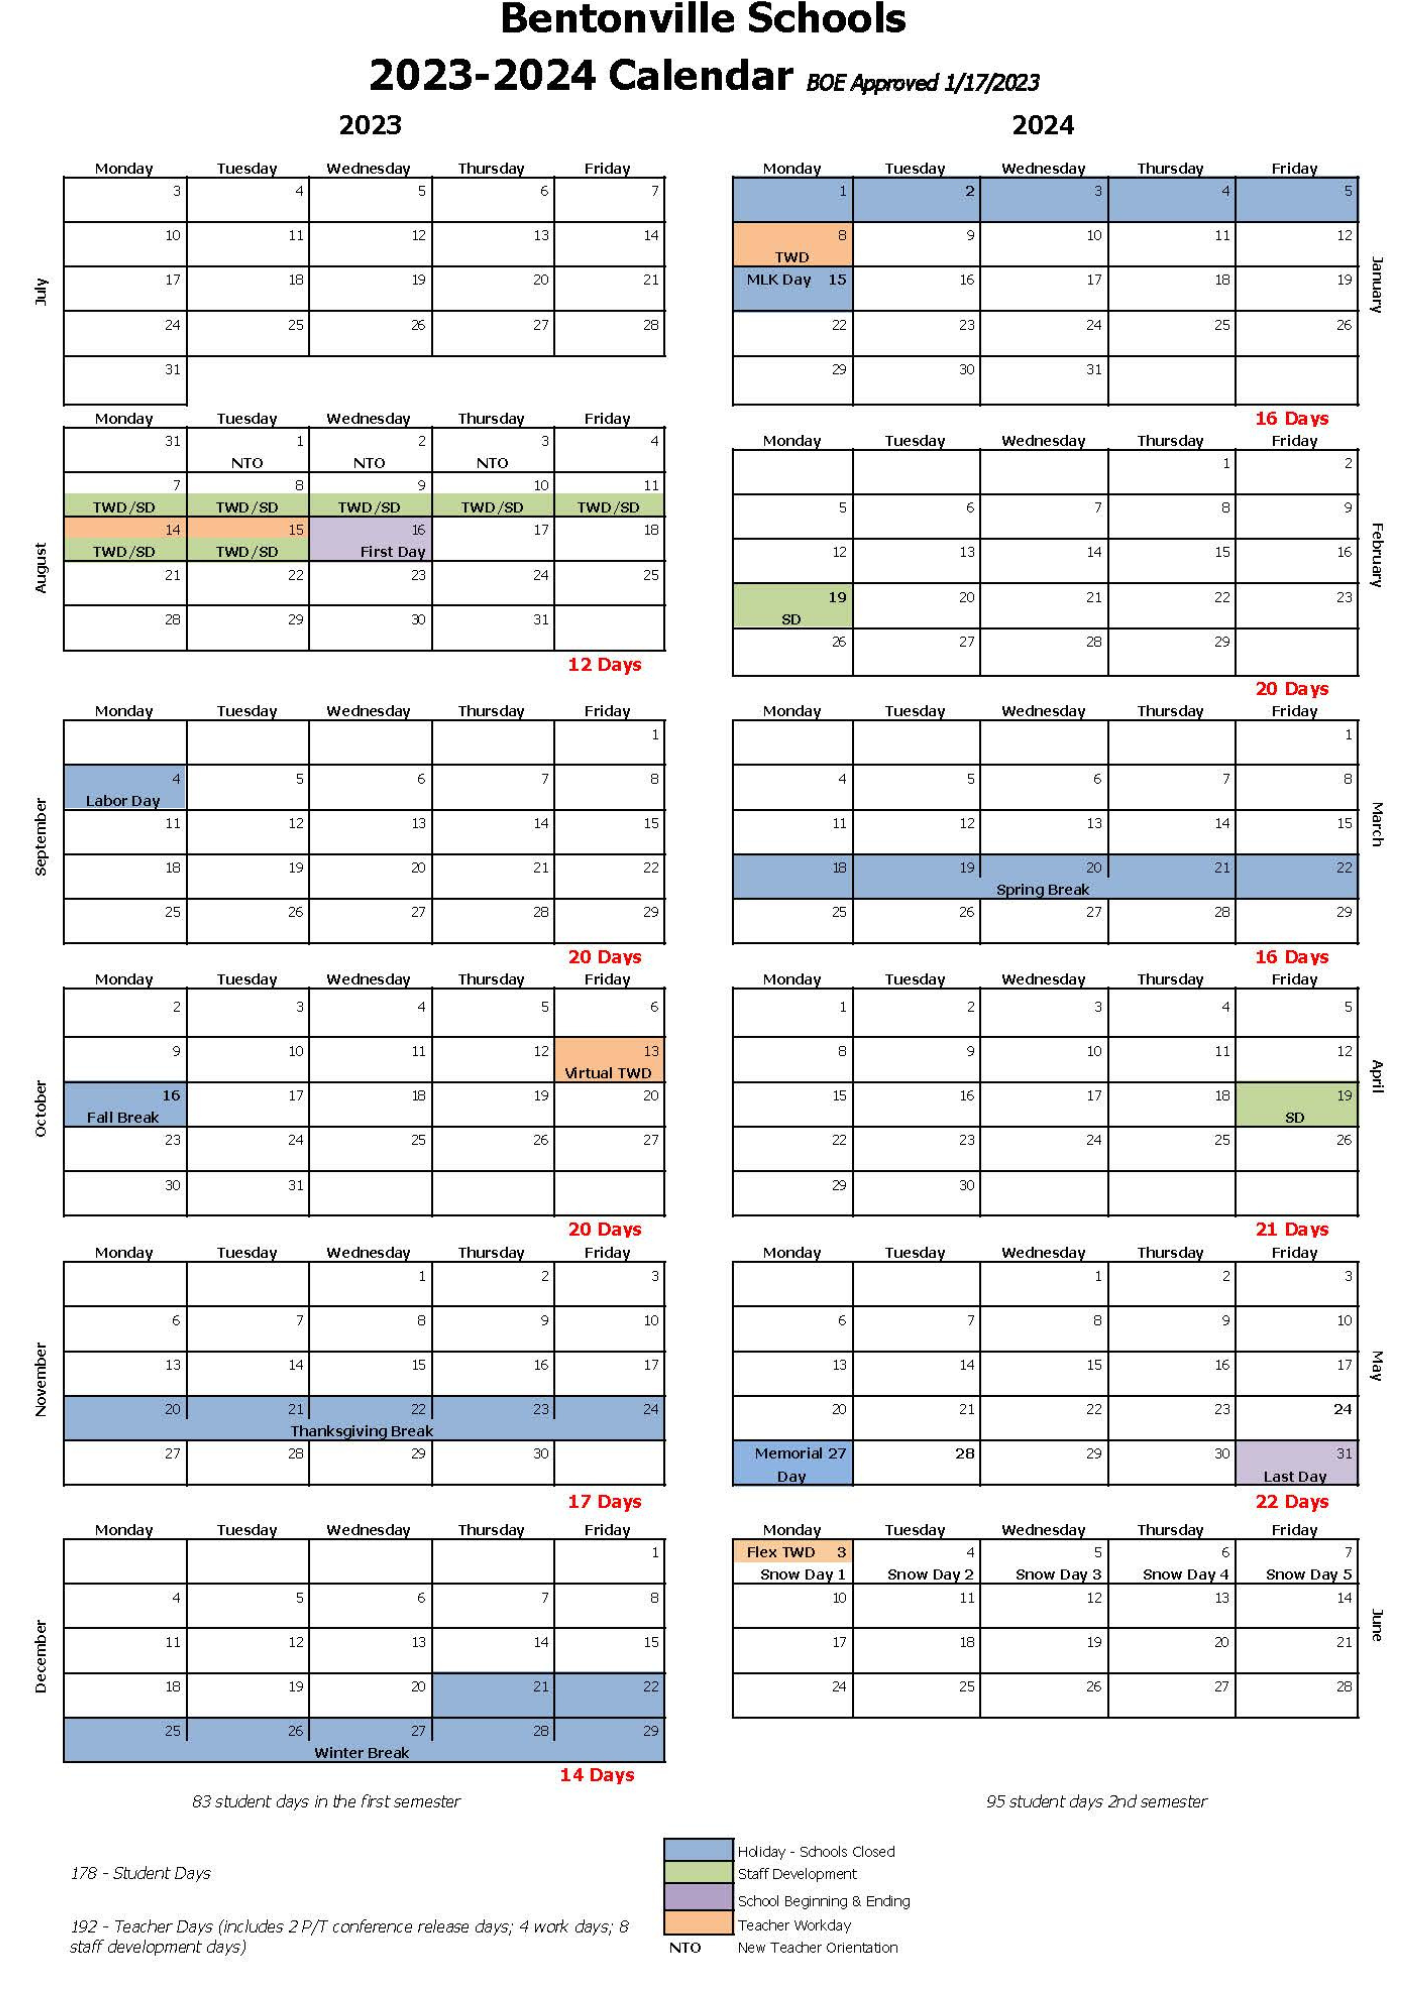 calendars-bentonville-schools